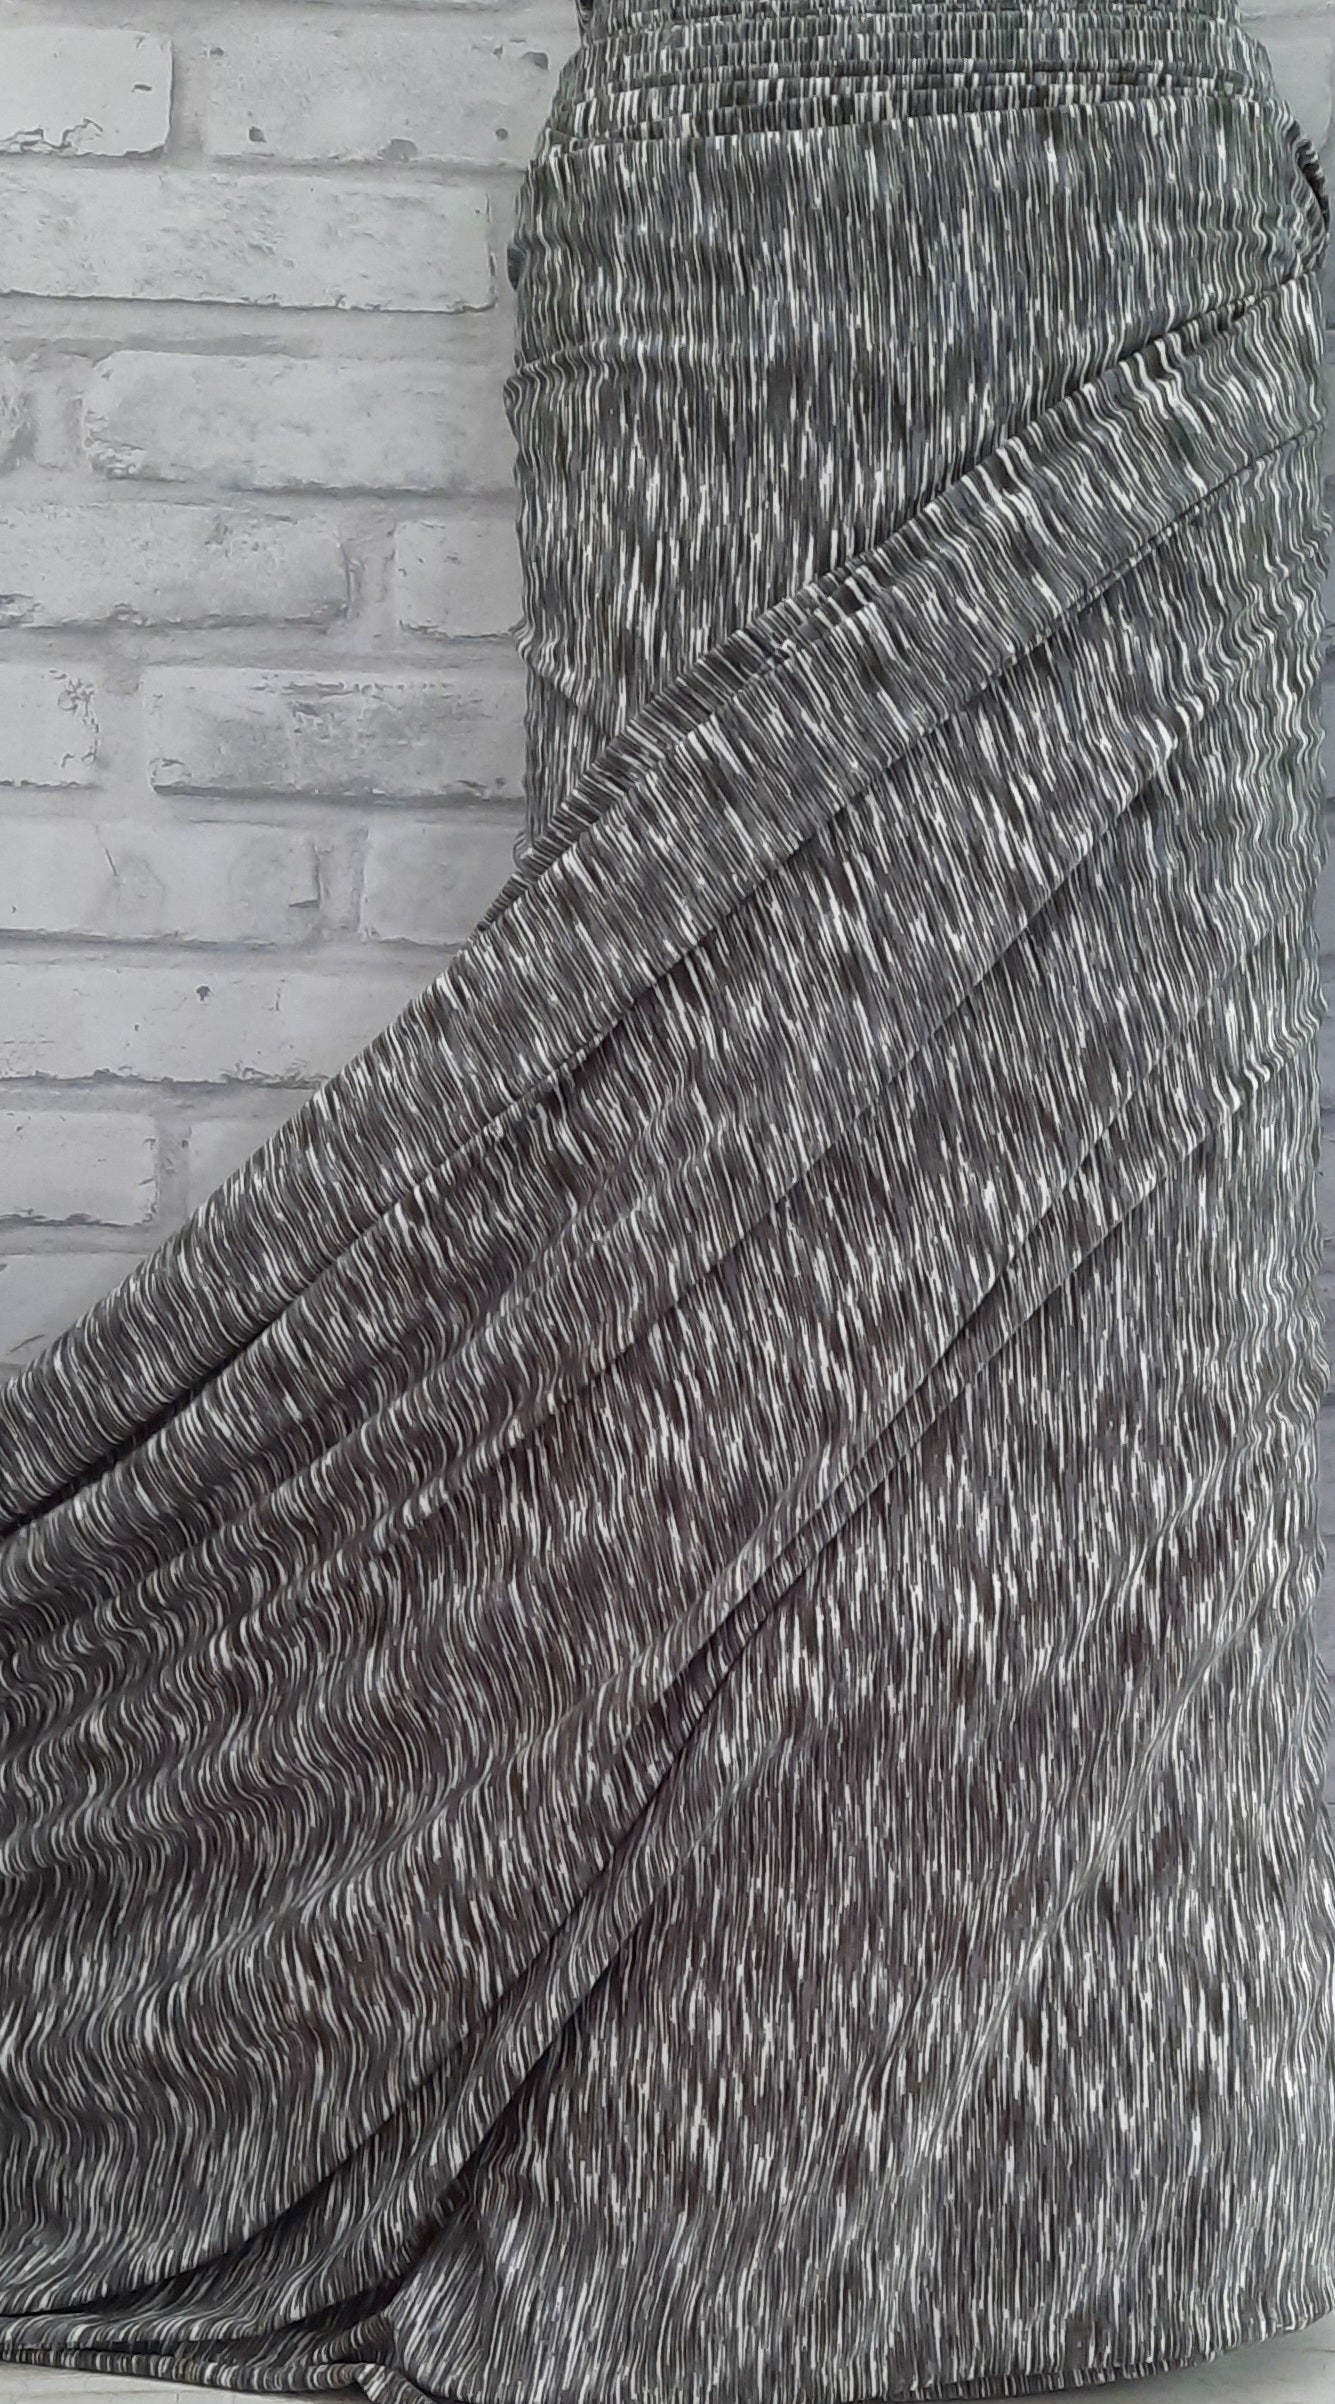 Single brushed knit